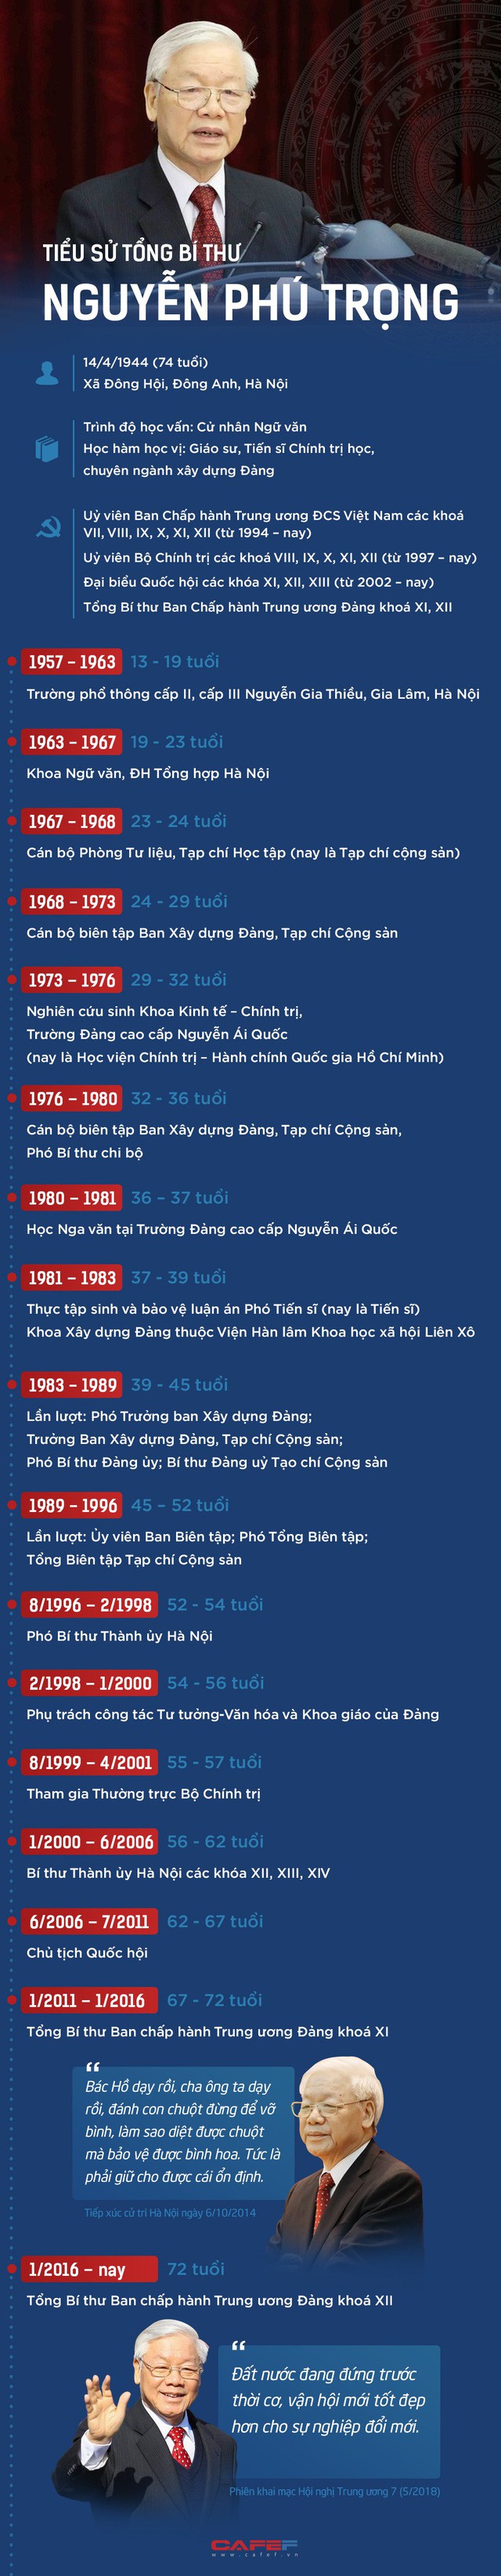 Tổng Bí thư Nguyễn Phú Trọng và những cột mốc đáng nhớ - Ảnh 1.